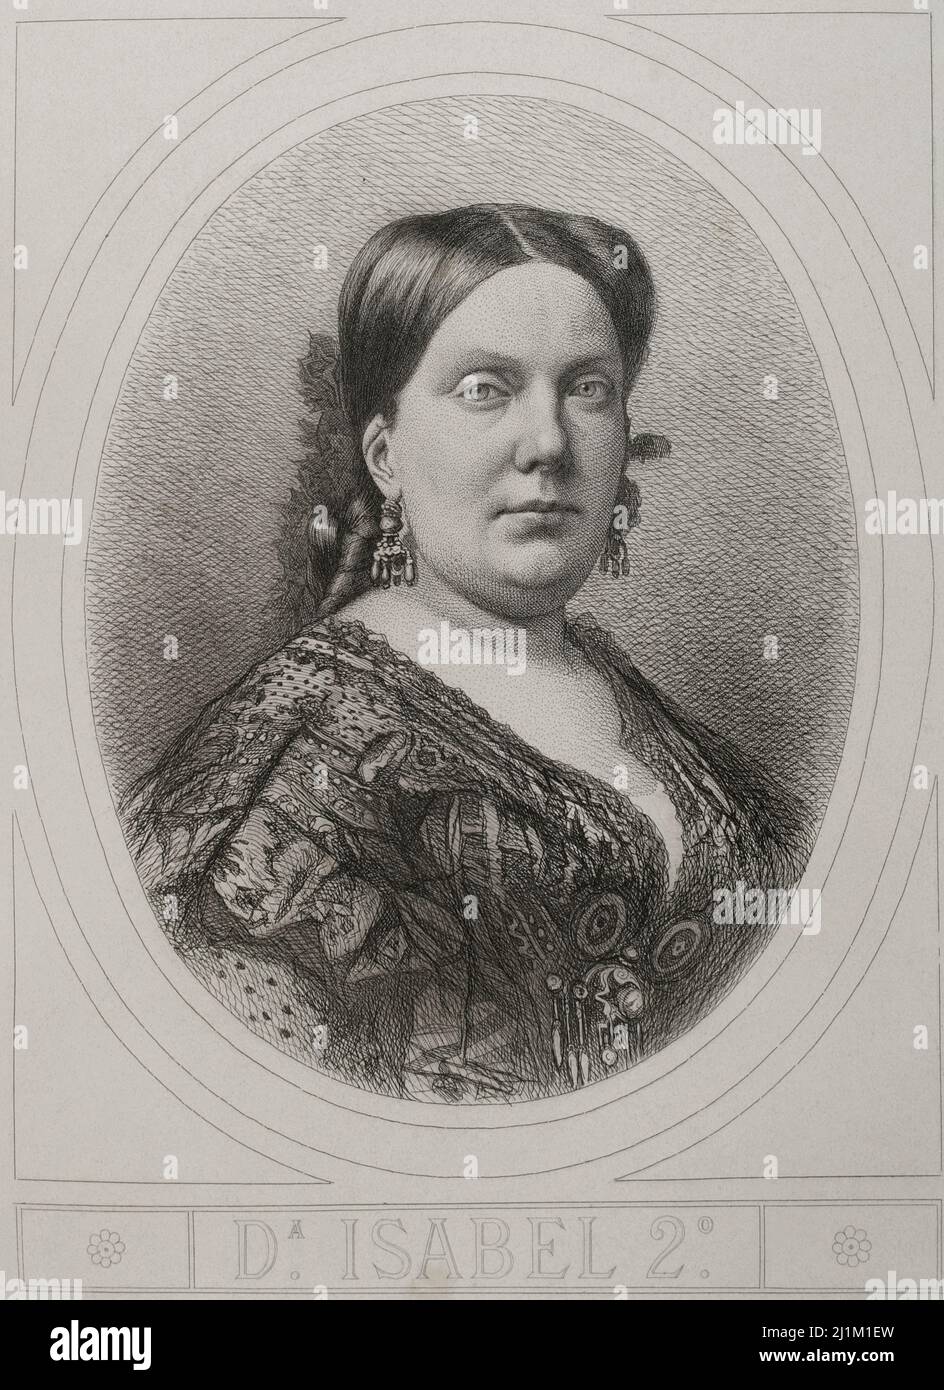 Isabella II. (1830-1904). Königin von Spanien von 1833 bis 1868. Hochformat. Gravur. Historia General de España, von Modesto Lafuente. Band VI. Veröffentlicht in Barcelona, 1882. Stockfoto